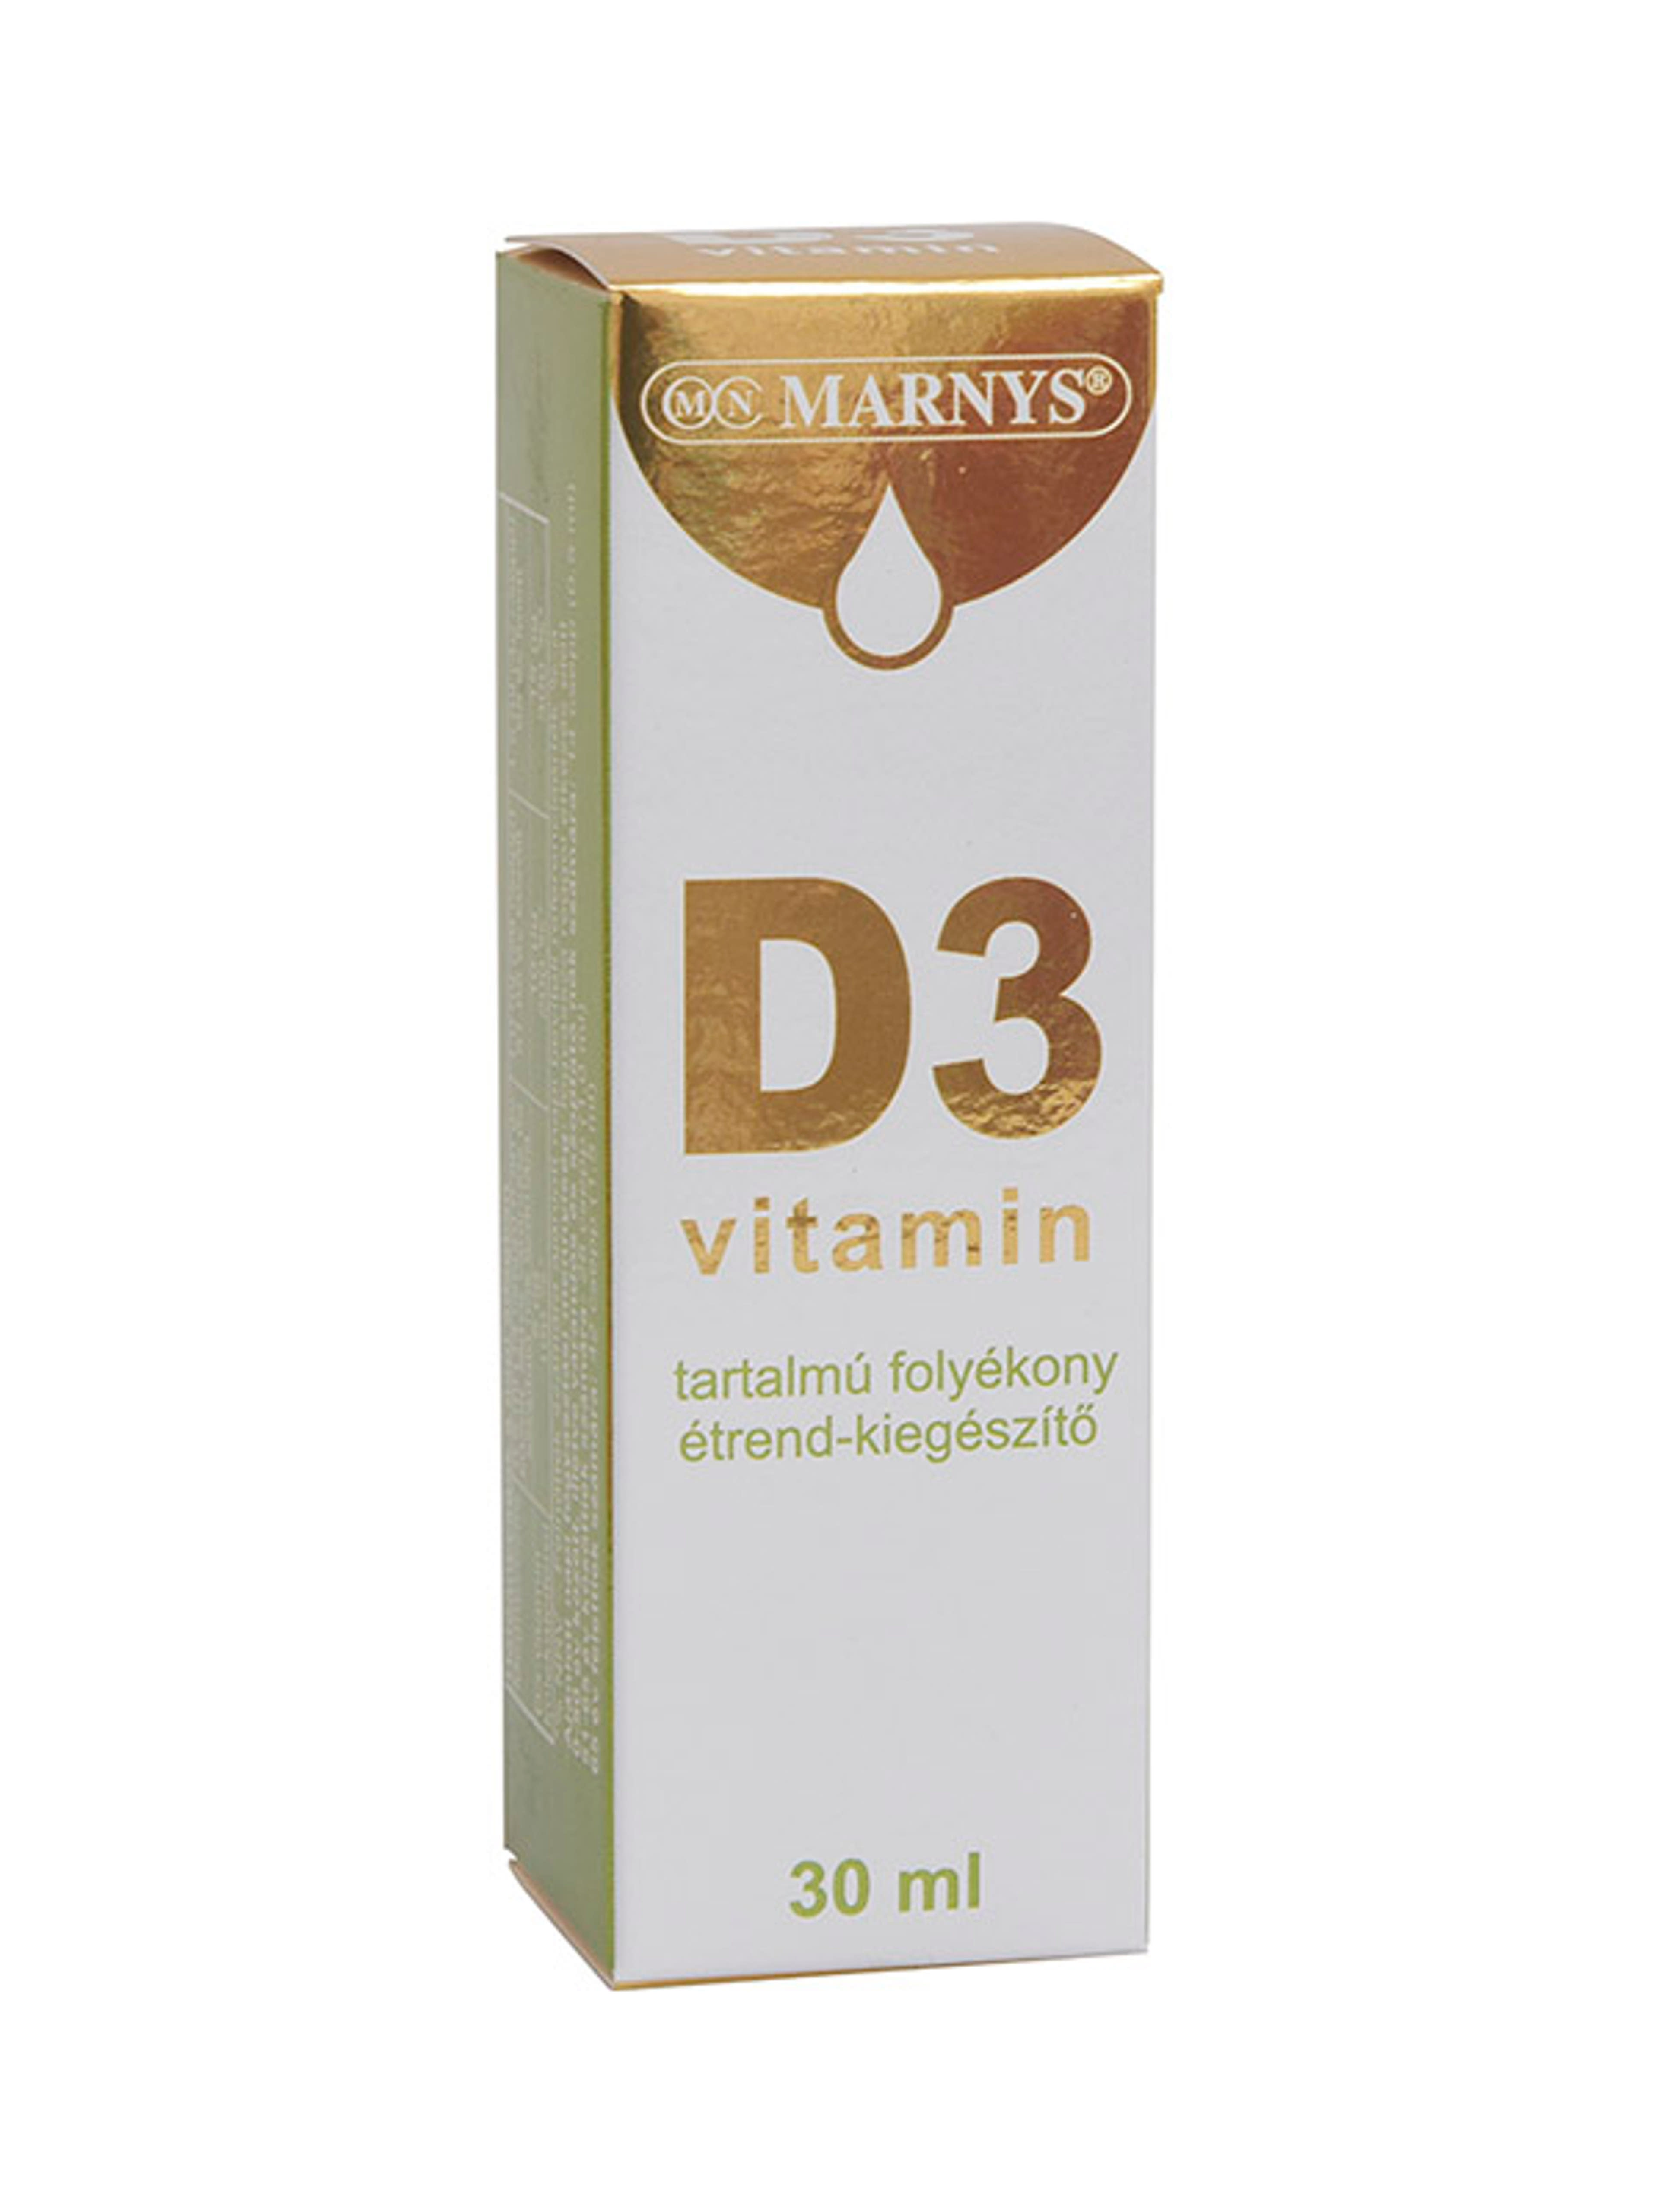 Marnys D3-vitamin tartalmú folyékony étrendkiegészítő - 30 ml-1